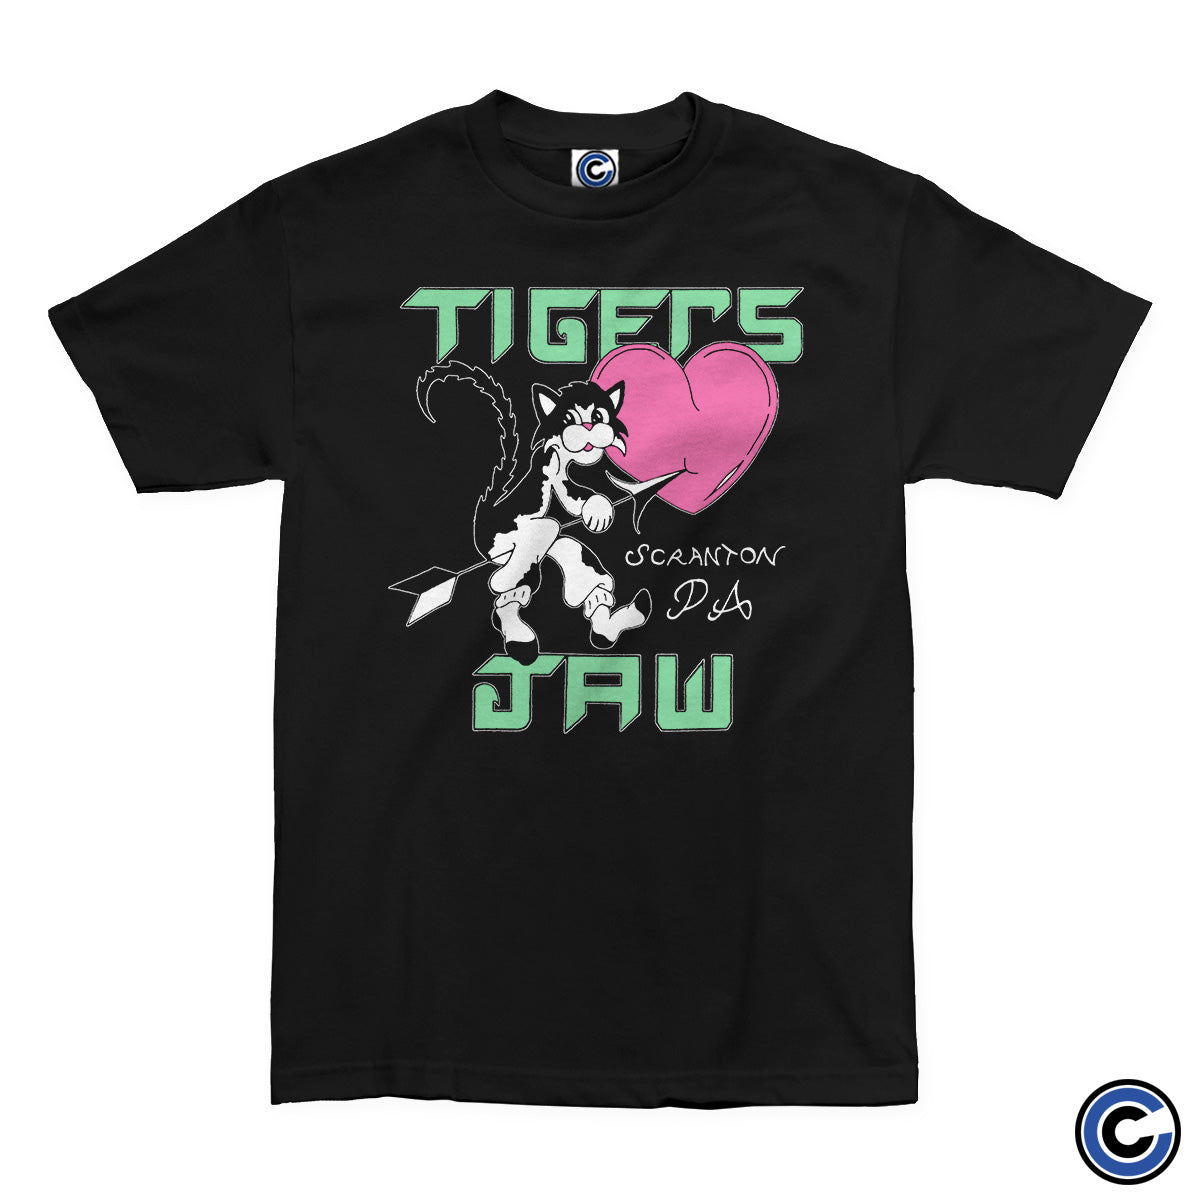 Tigers Jaw "Lovecat" Shirt